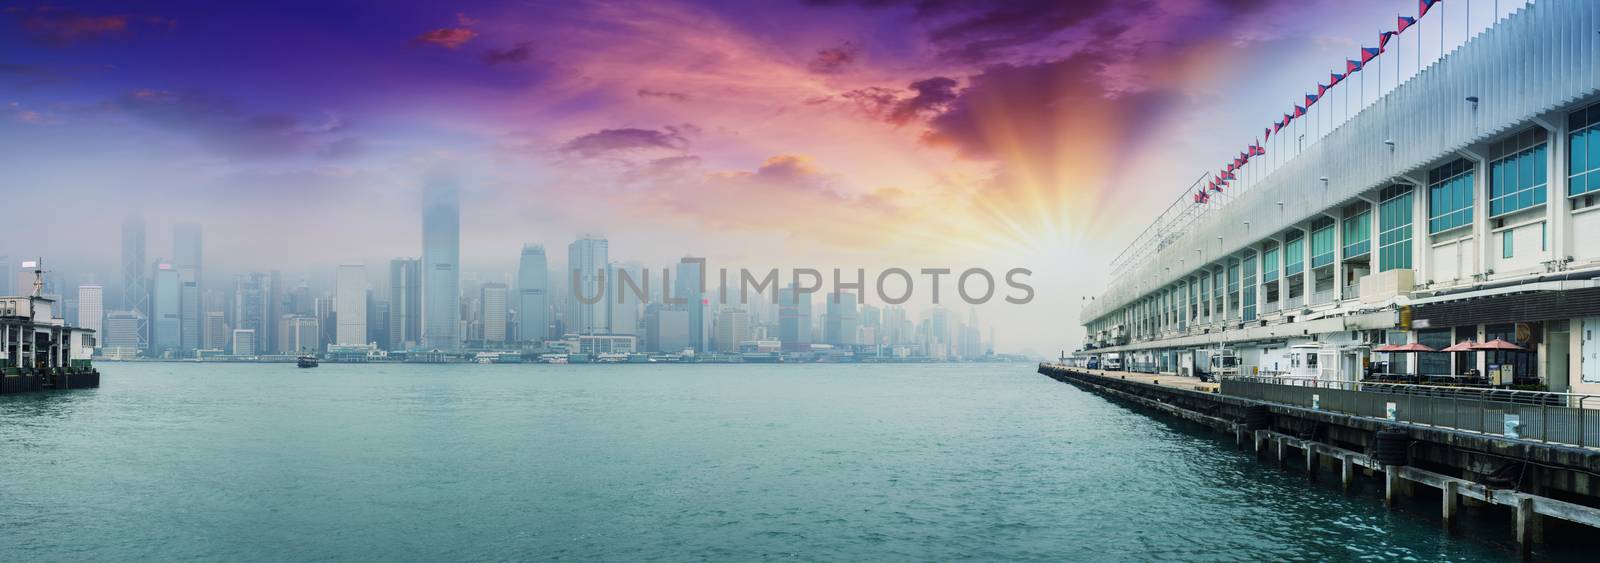 HONG KONG - MAY 12, 2014: Stunning panoramic view of Hong Kong I by jovannig